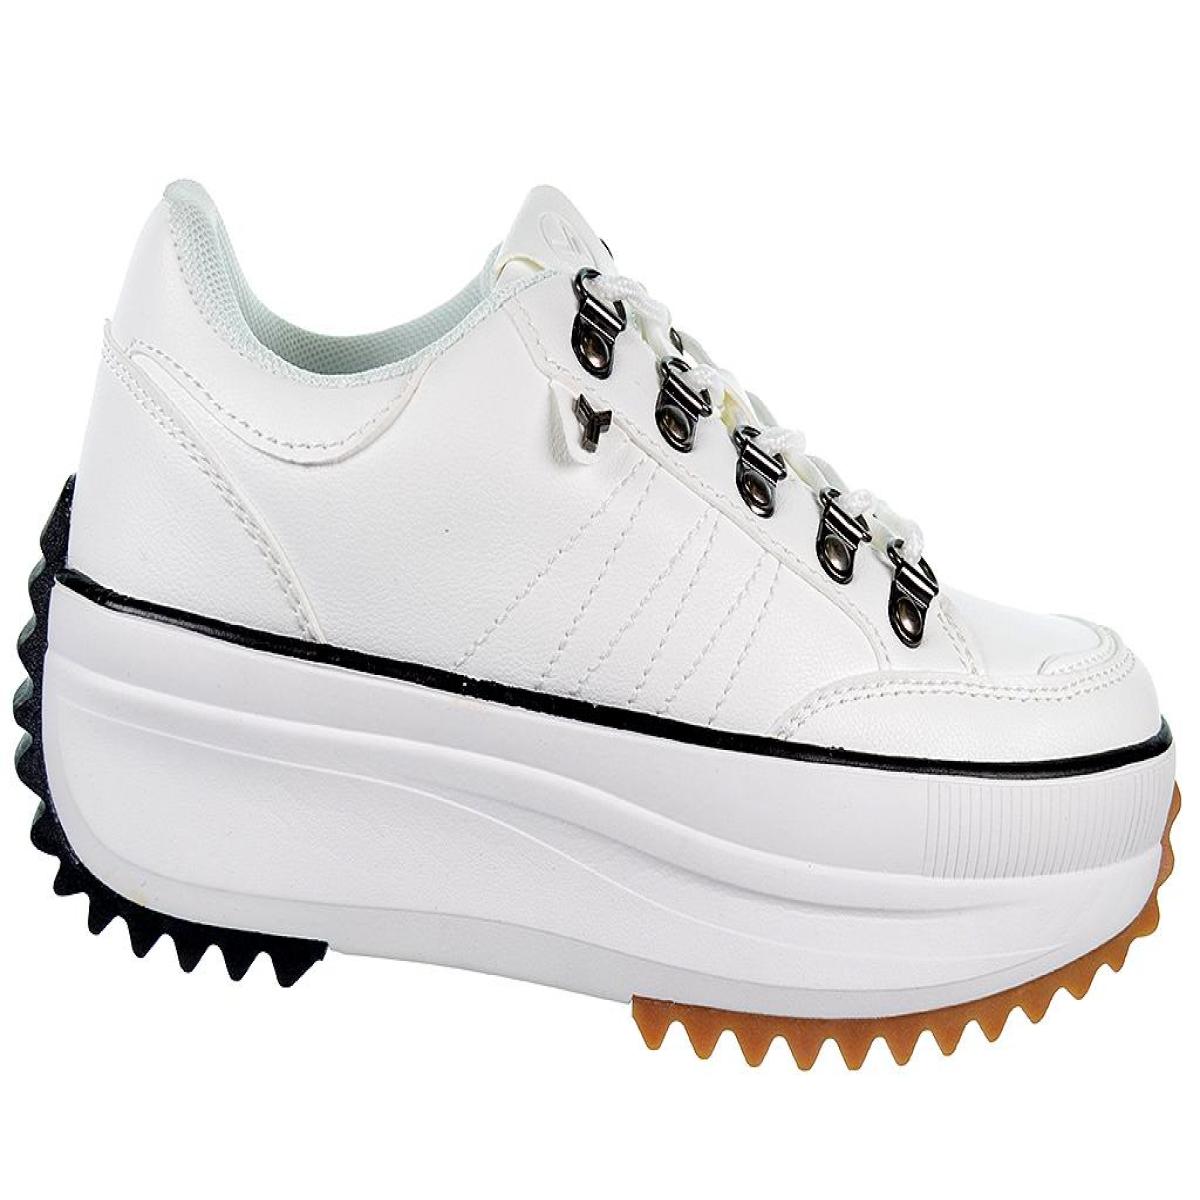 Soira Yumas zapato Sneaker microfibra, forro textil y plantilla confort látex. cordones. suela de goma antideslizante.